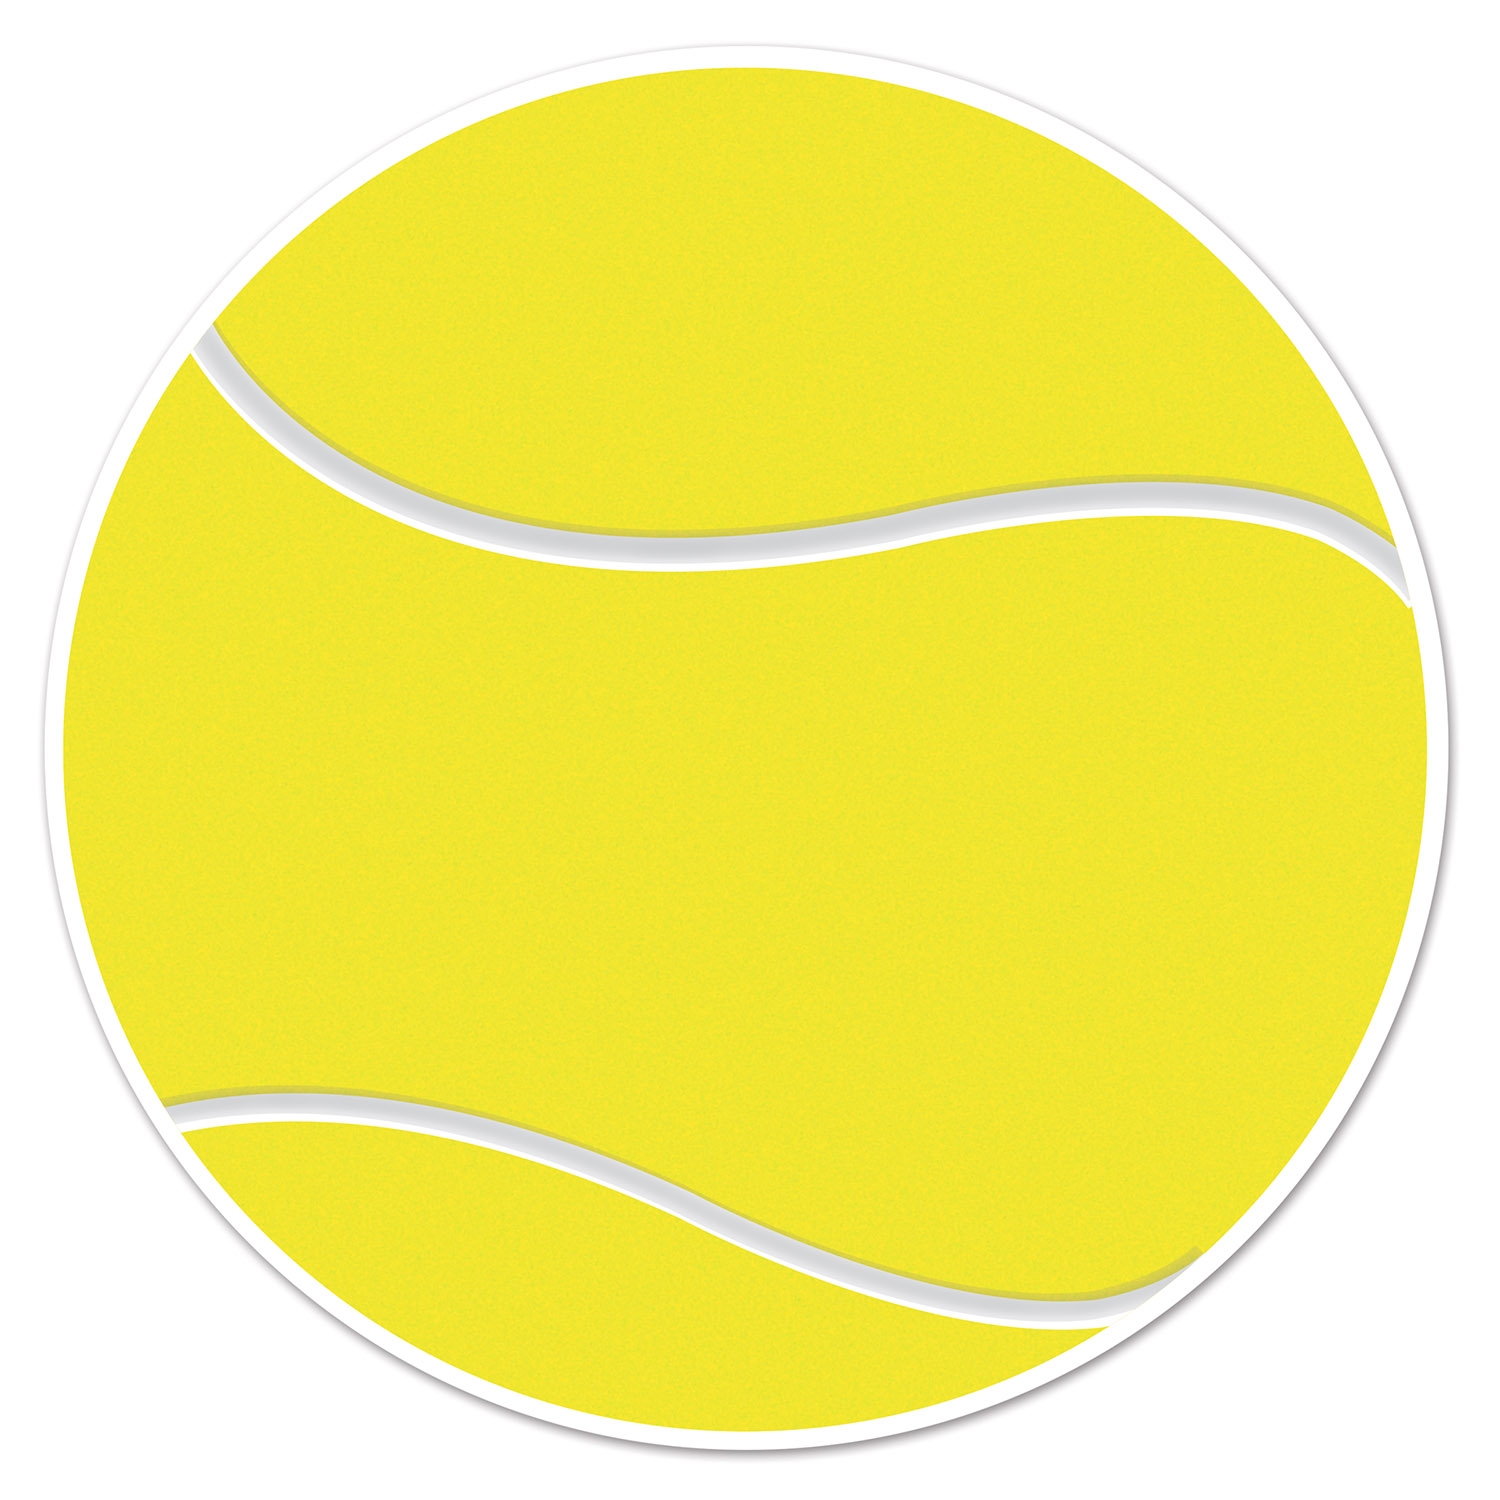 TENNIS BALL Cutout